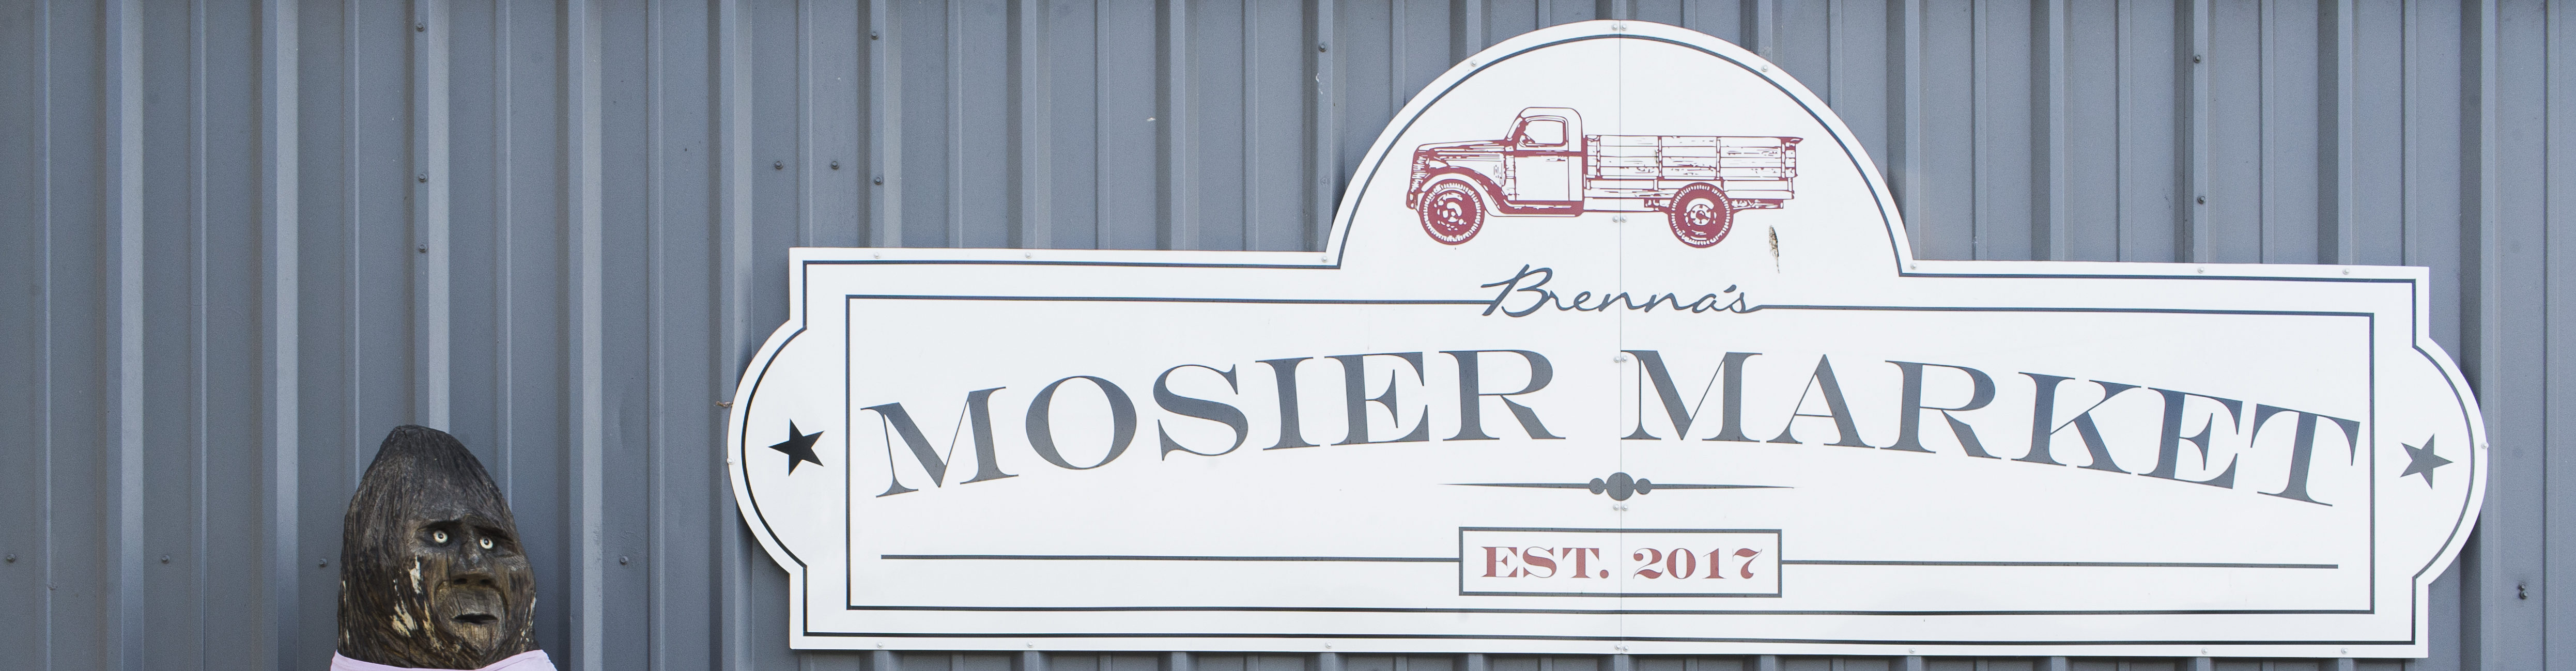 Brenna’s Mosier Market